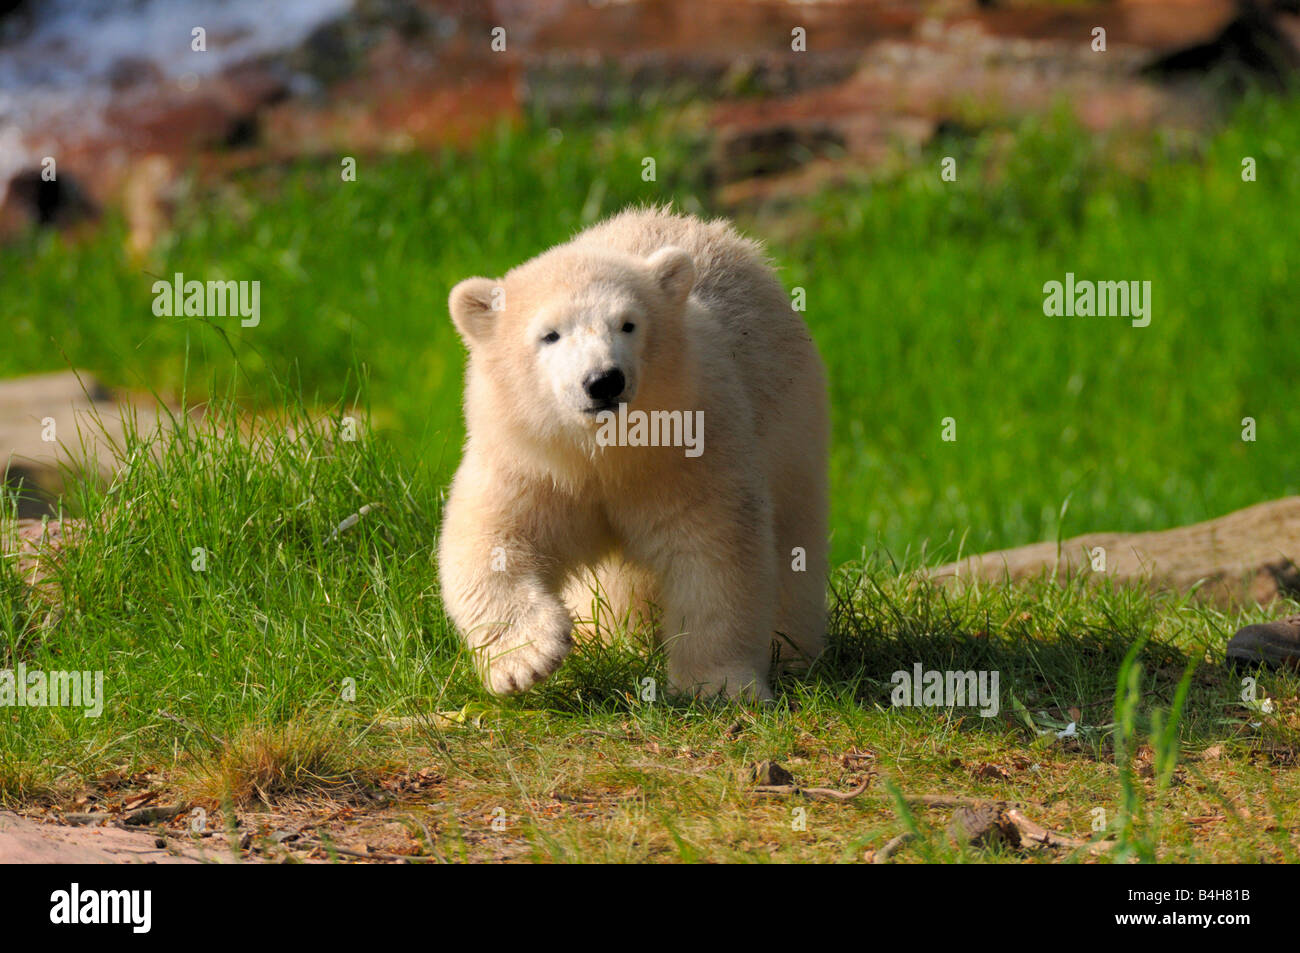 Orso polare (Ursus maritimus) passeggiate in campo, Norimberga, Germania Foto Stock